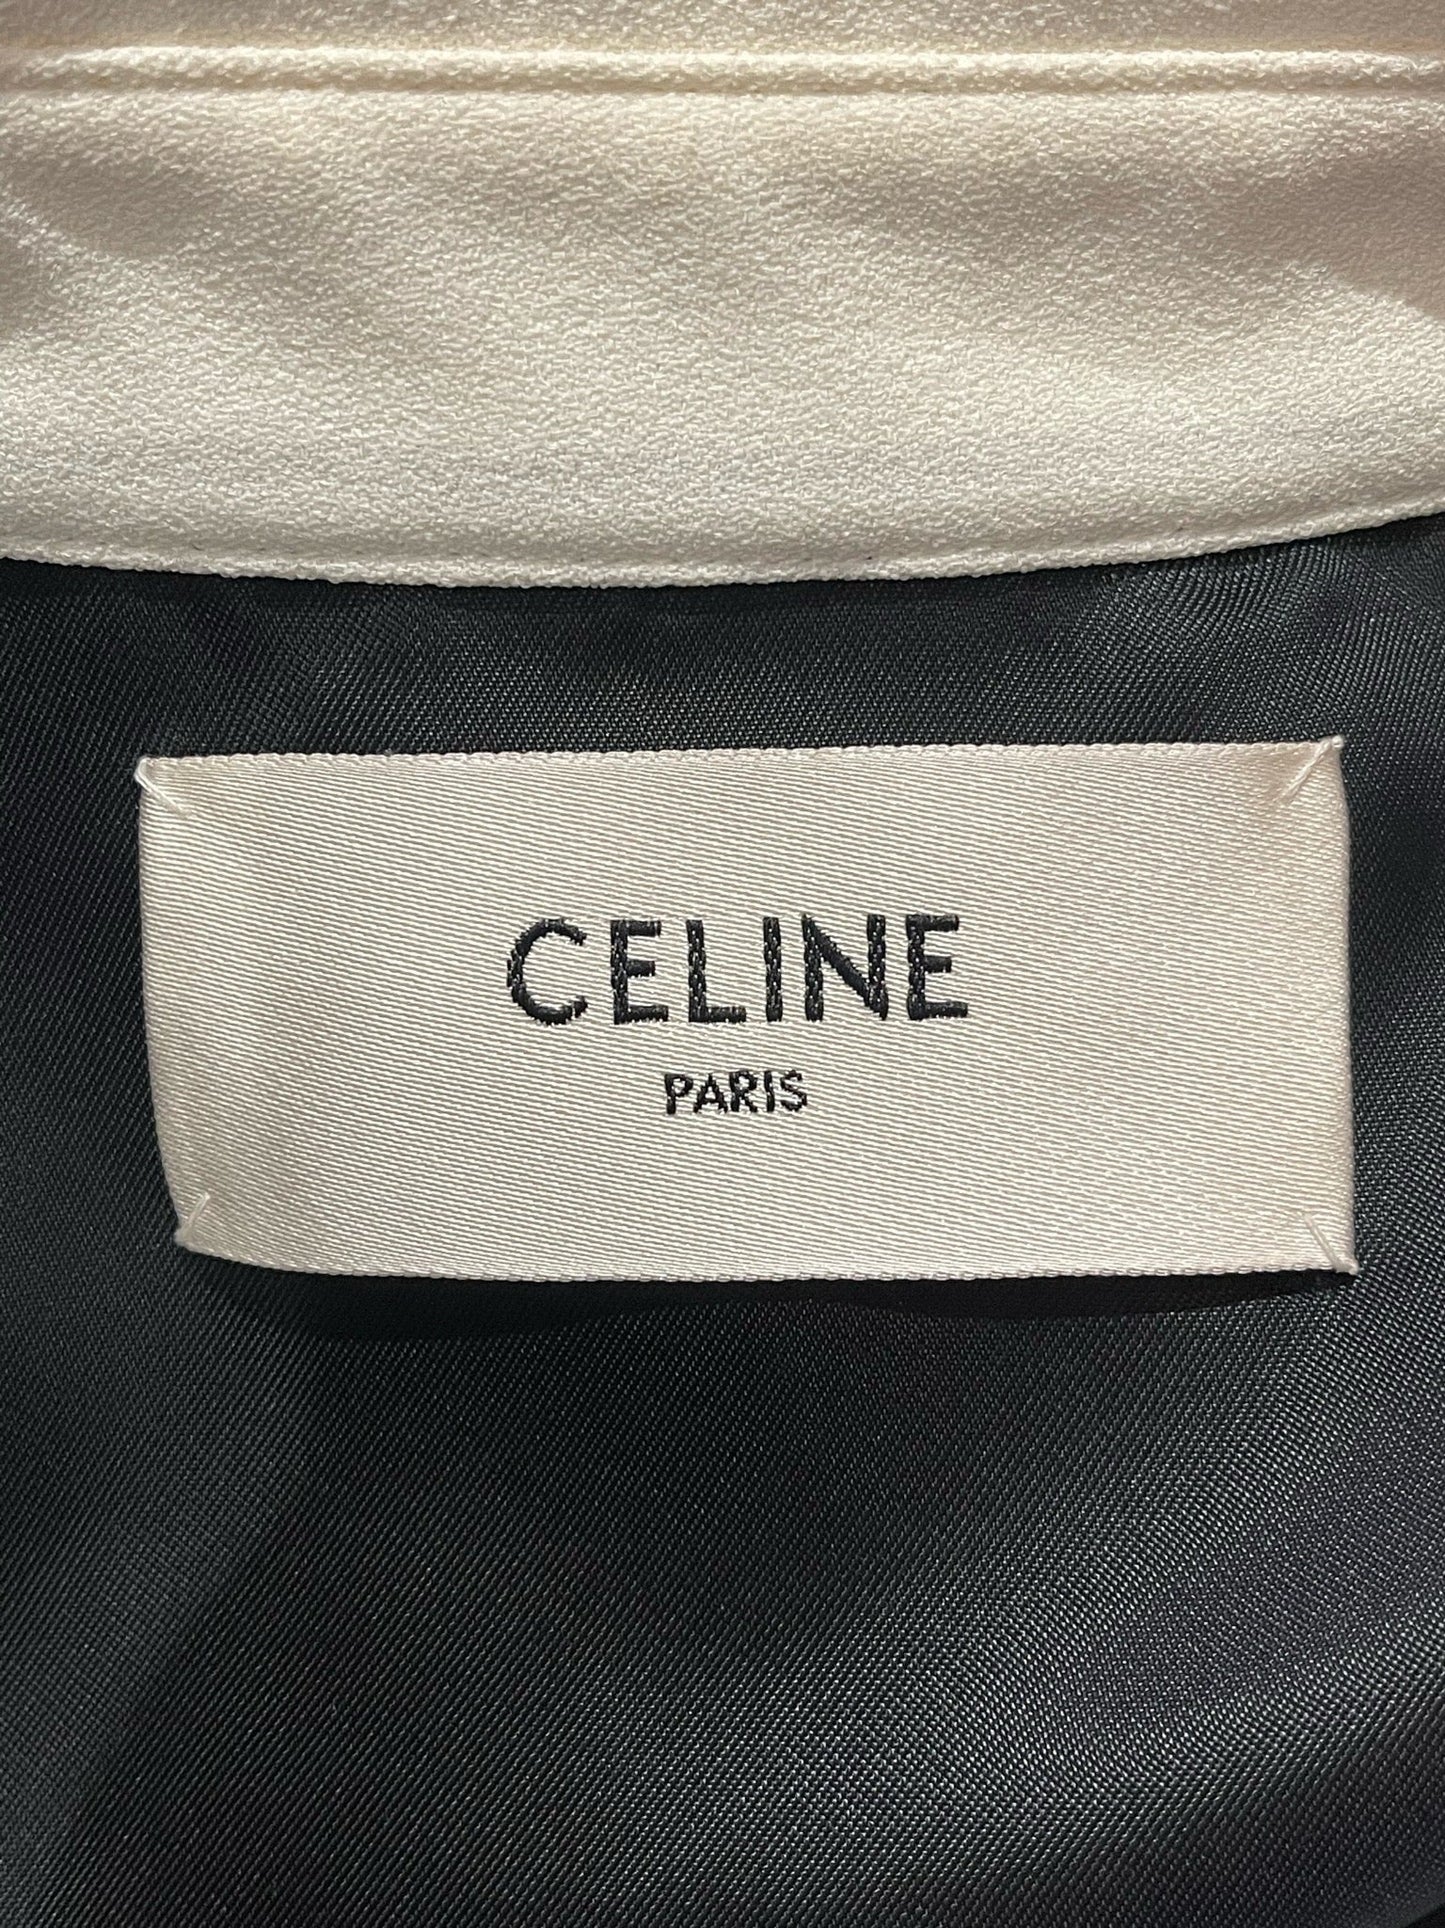 Robe Céline noire T.36